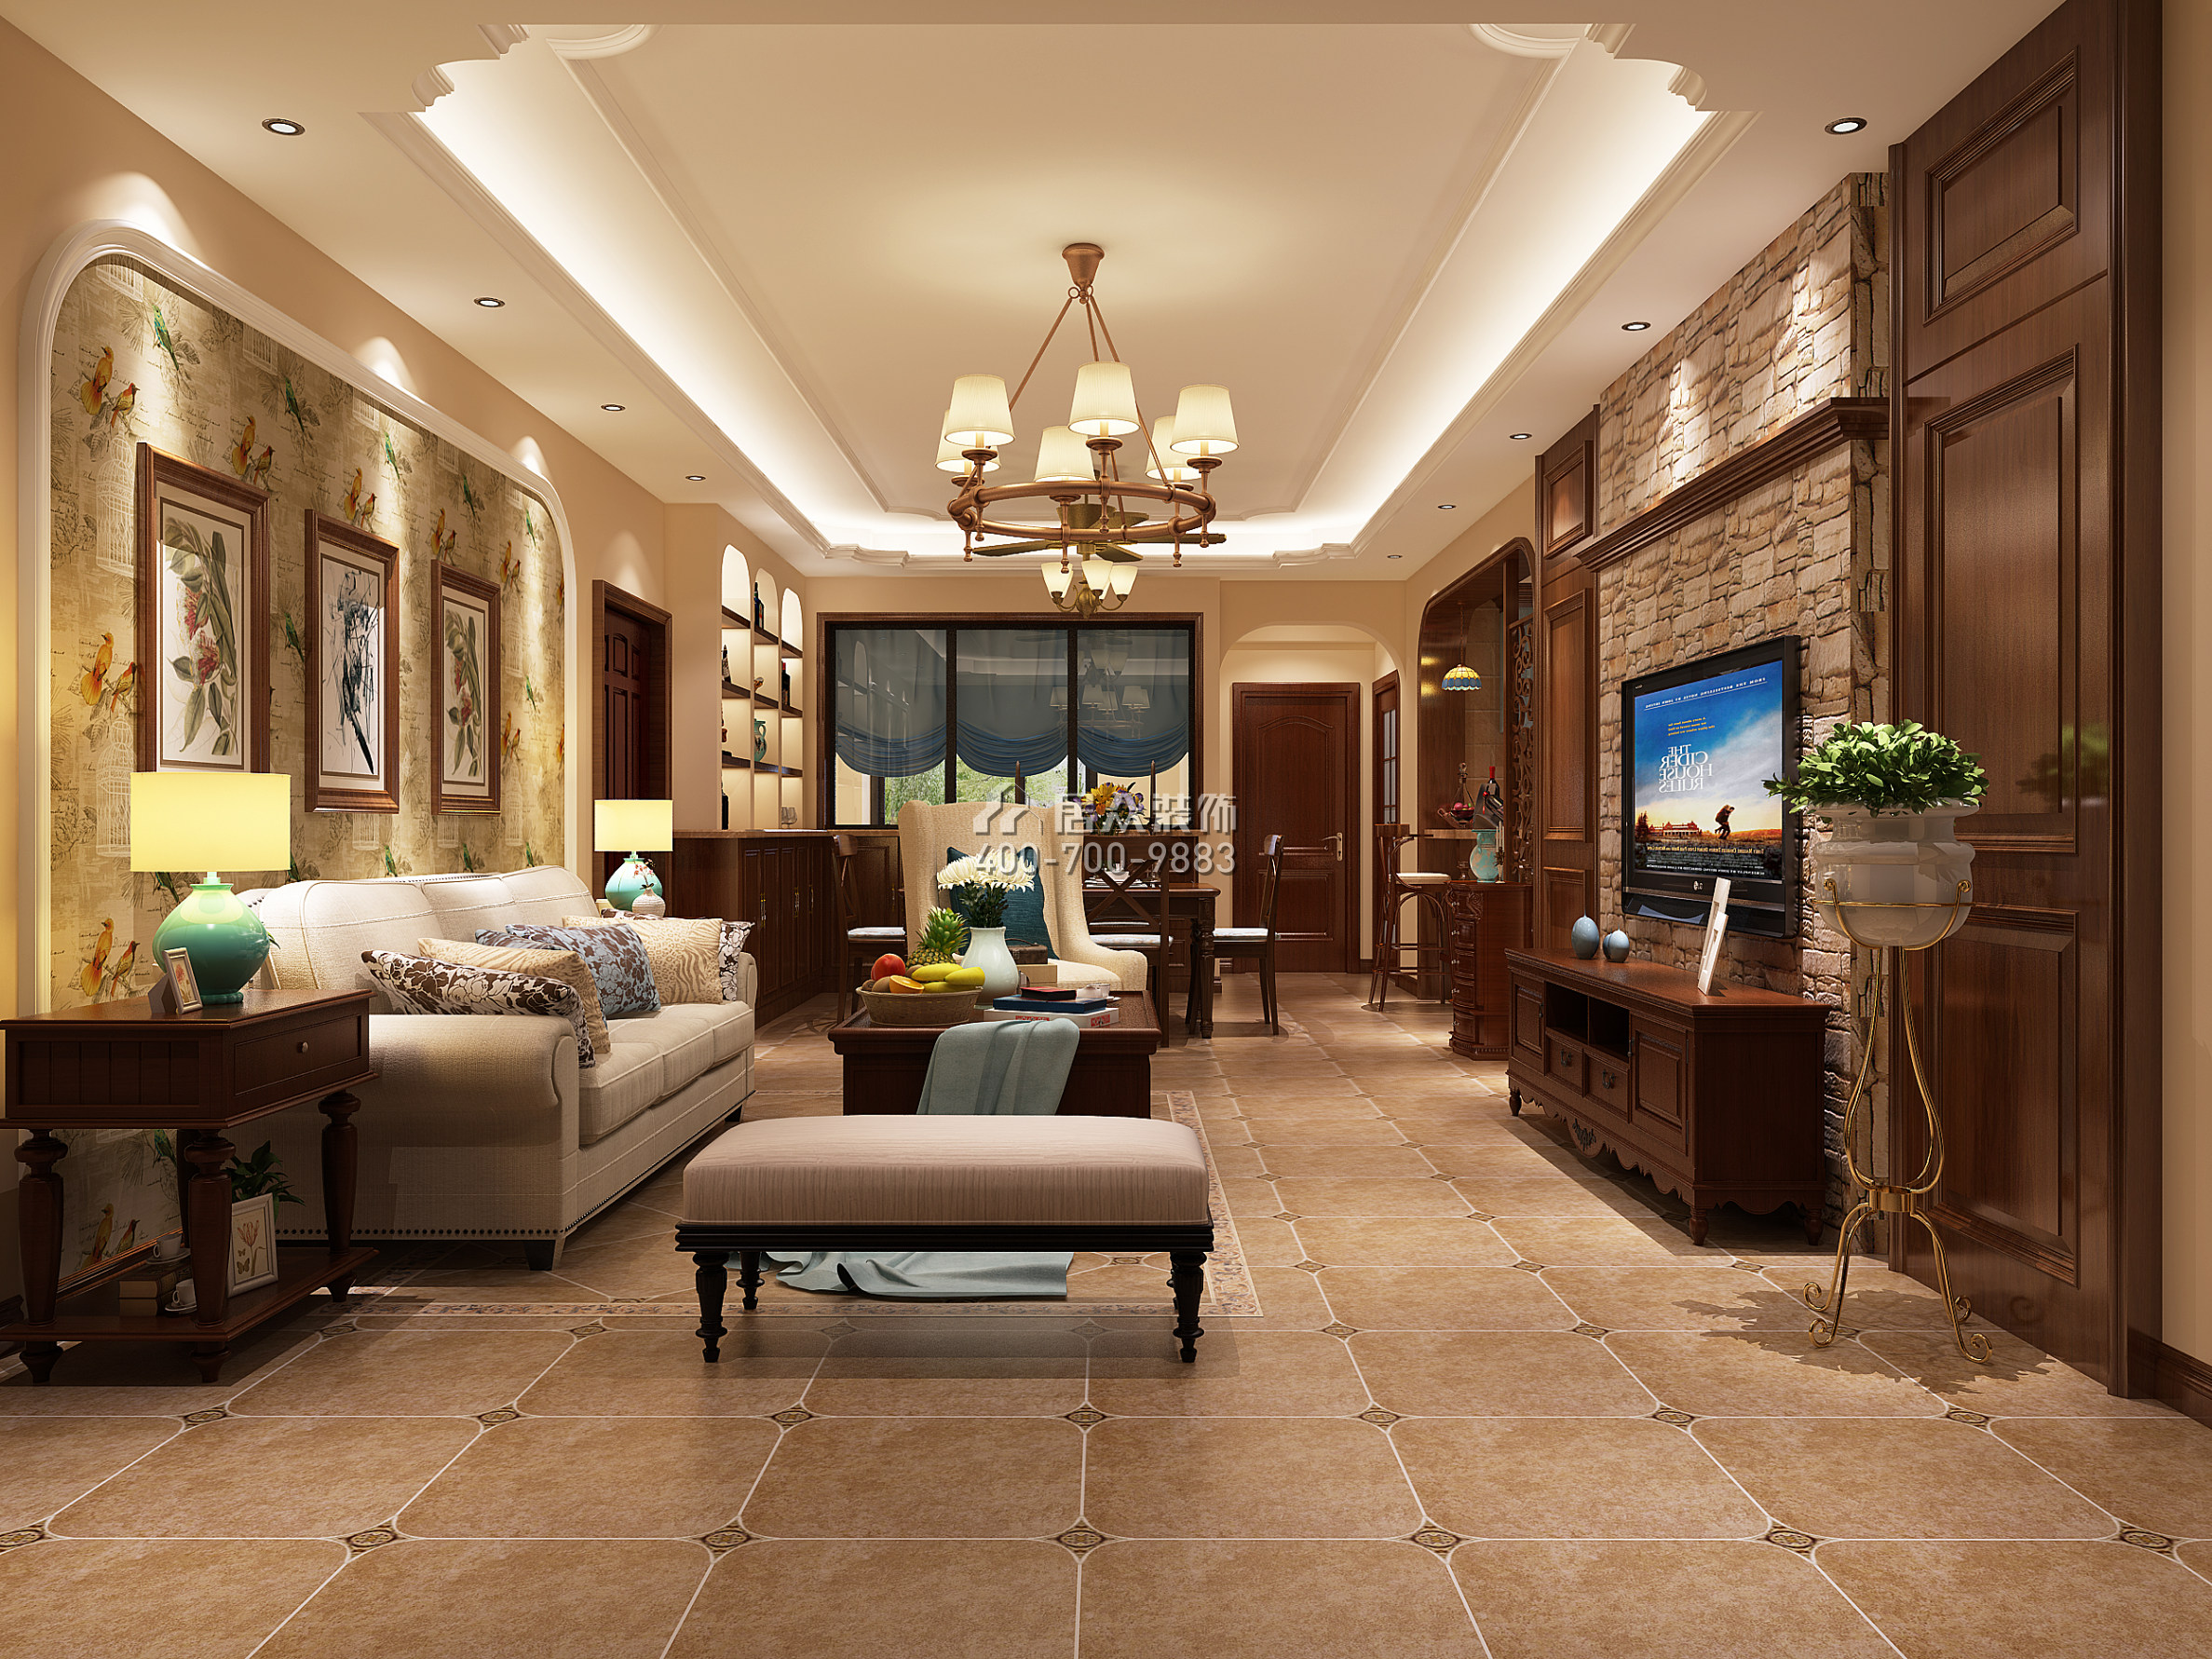 奧園神農養生城114平方米美式風格平層戶型客廳裝修效果圖